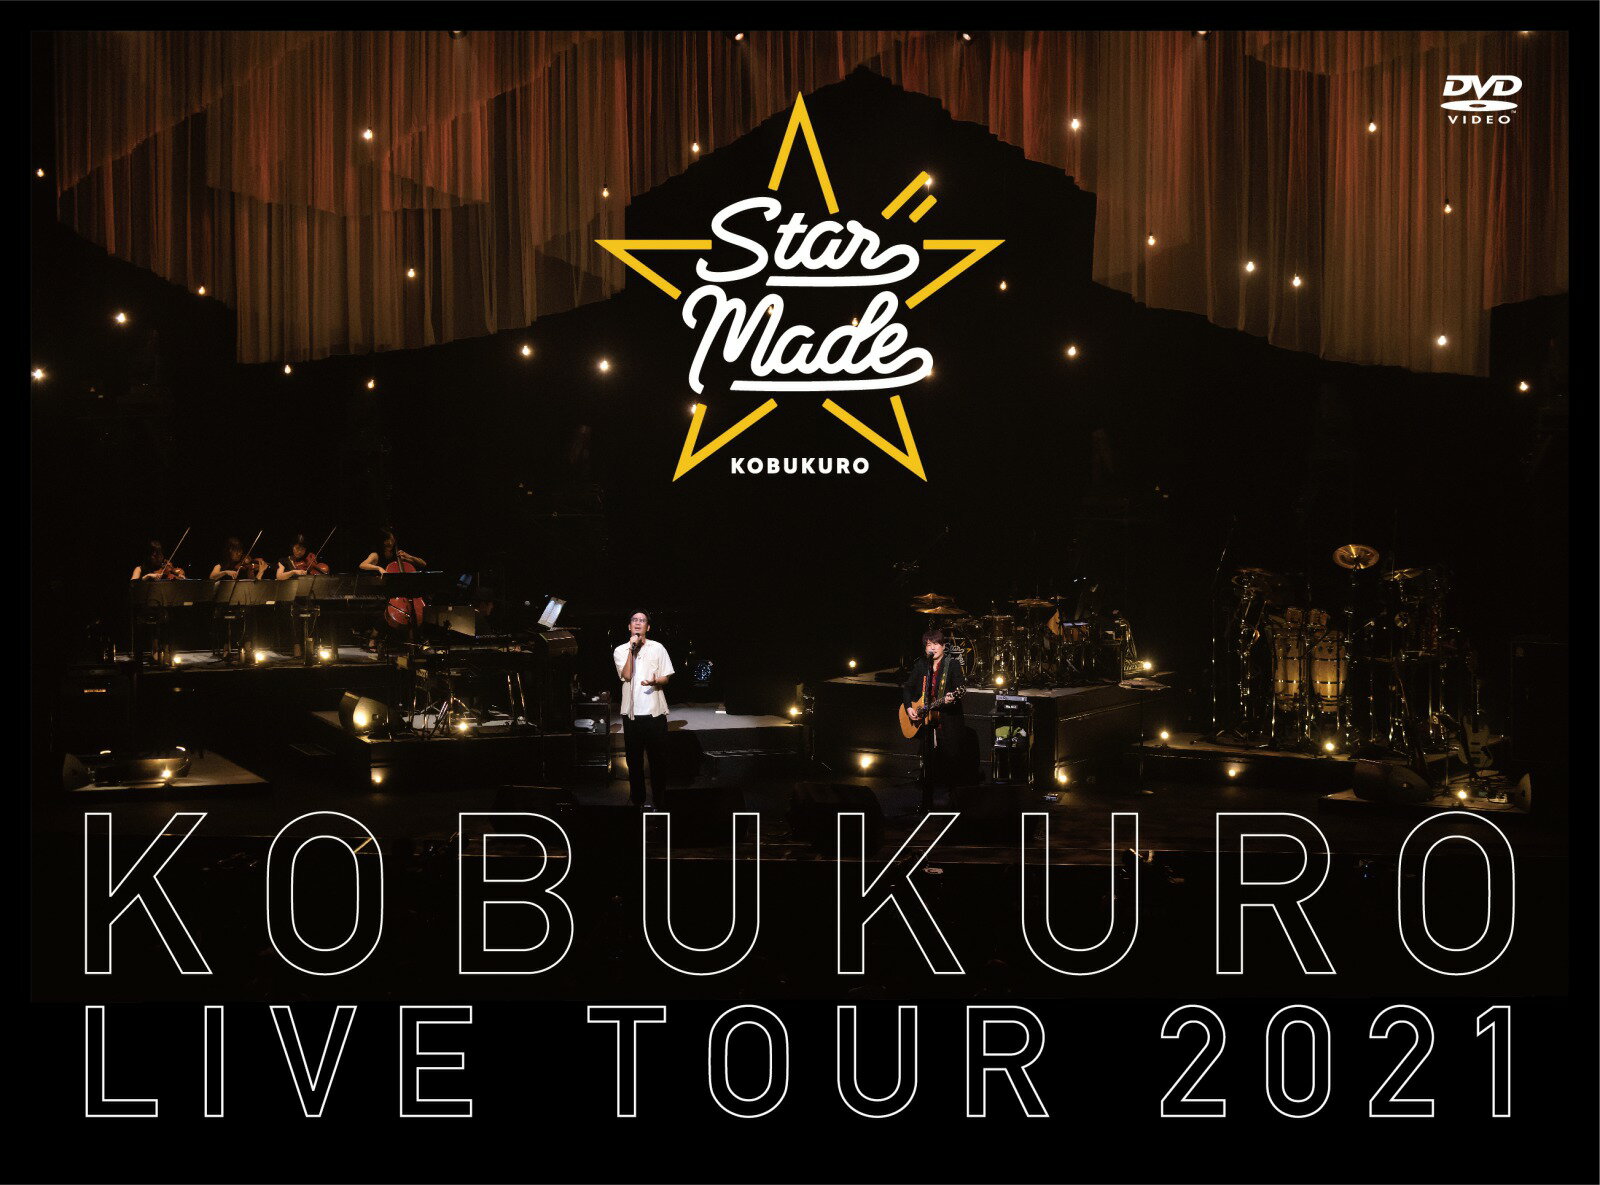 KOBUKURO LIVE TOUR 2021 “Star Made” at 東京ガーデンシアター(DVD 初回限定盤)